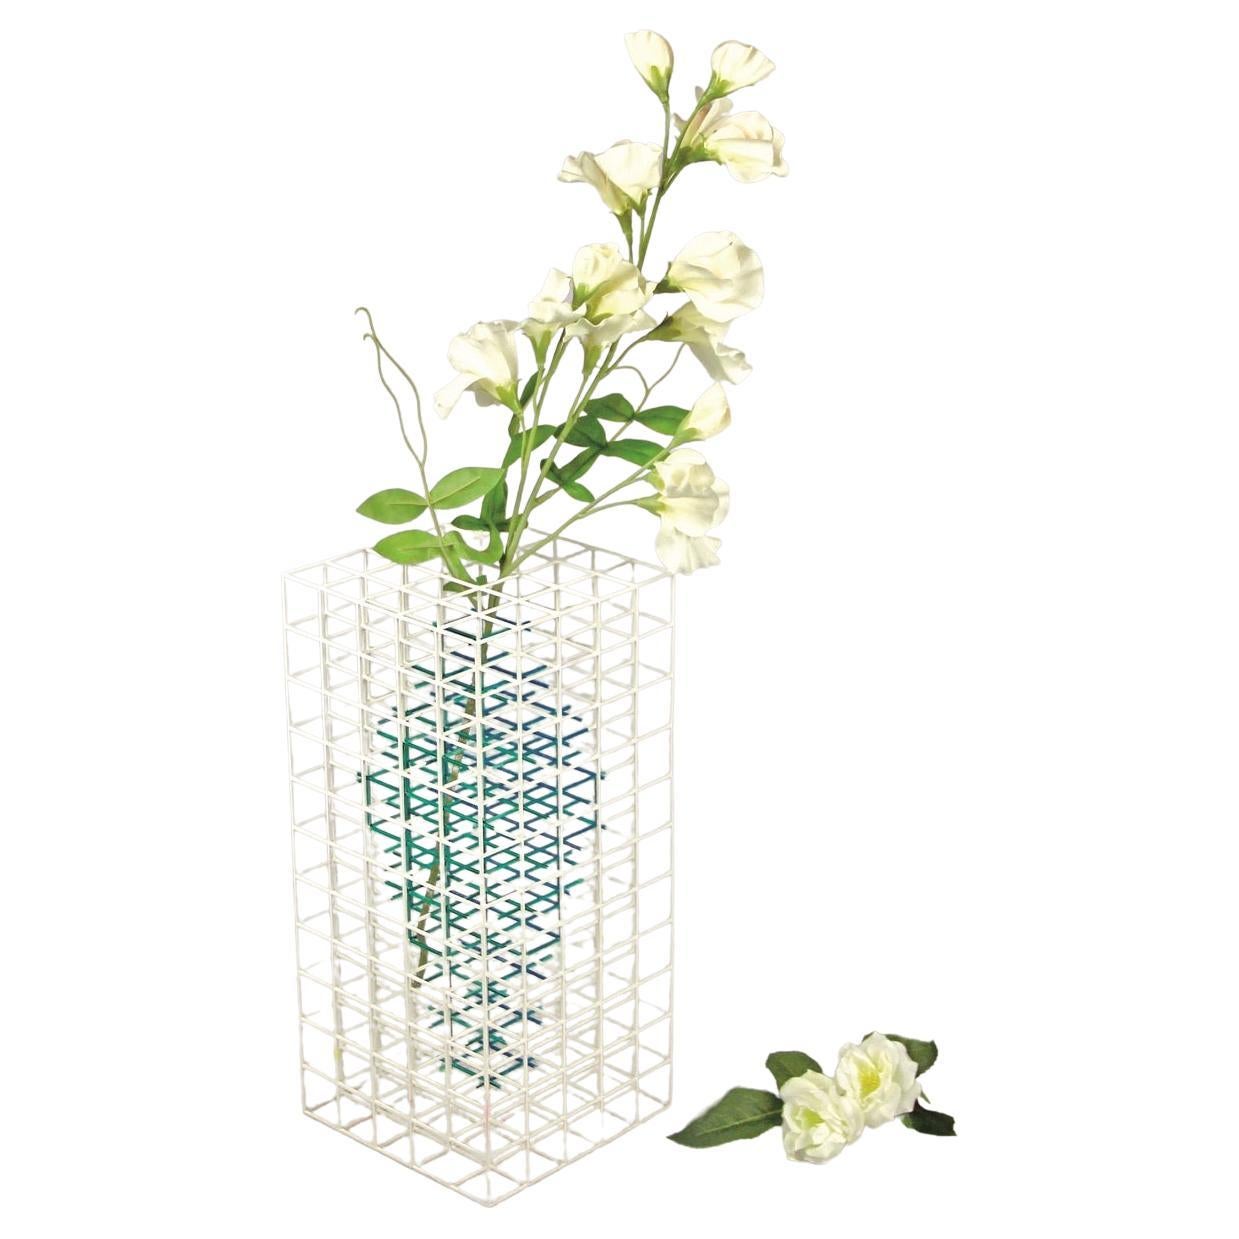 Vasen werden als Gefäße mit Rand definiert, aber nicht als solche. Vase NA 2.0 wurde von Desz entwickelt, um die Beziehung zwischen Mensch und Raum zu erforschen. Es ist ein Konzept über Linien, Farben und die Idee, scheinbar etwas aus dem Nichts zu